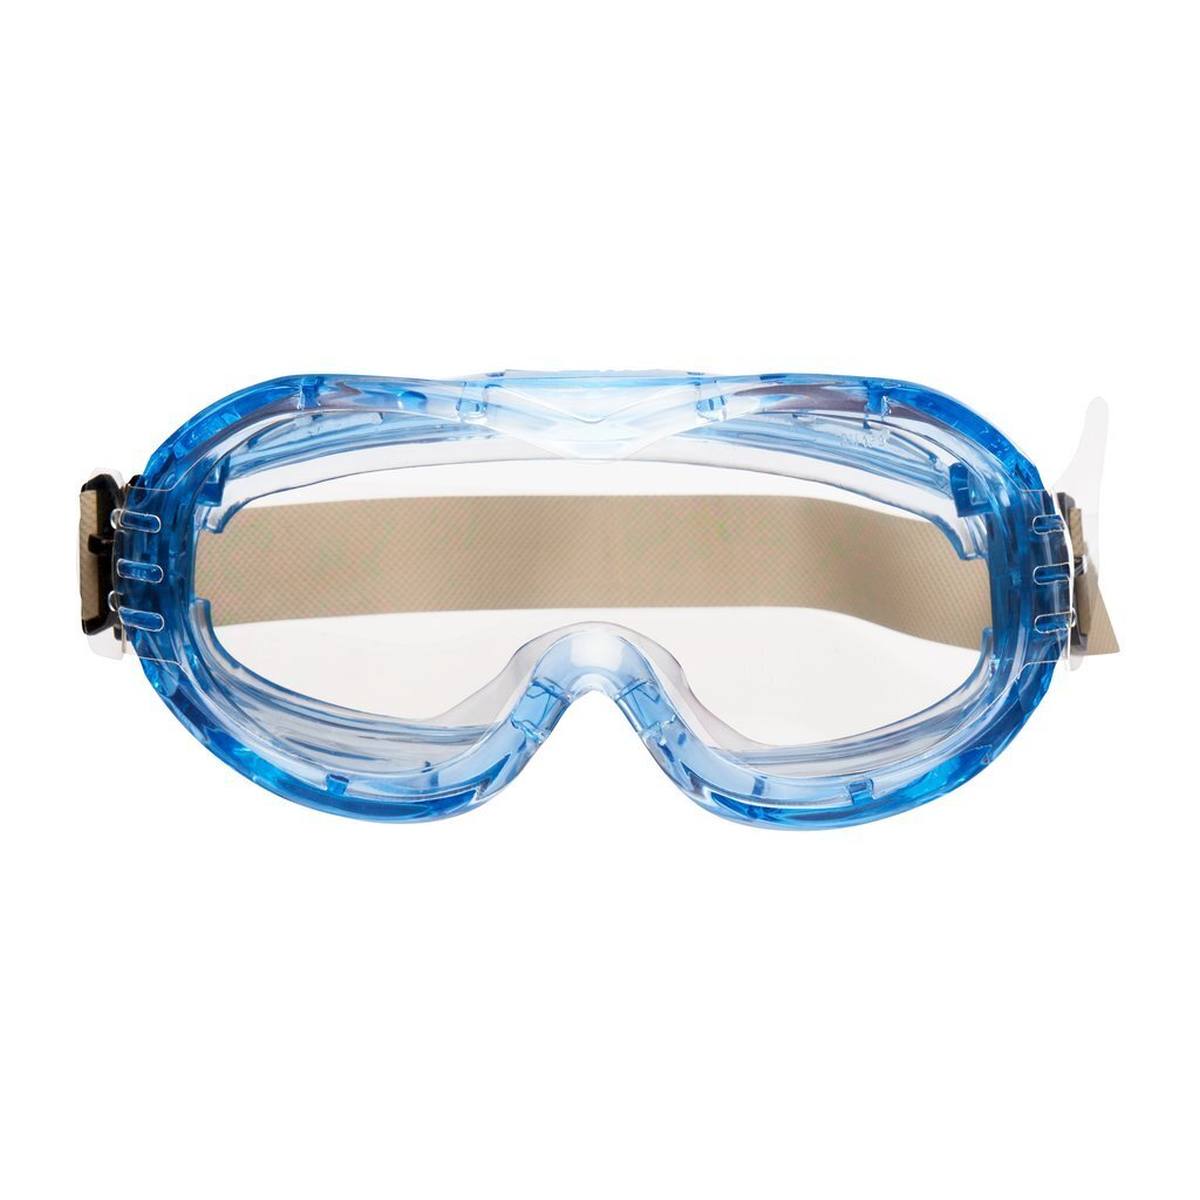 3M Fahrenheit Schutzbrille mit Acetat/Hardium-Beschichtung AS/AF/UV, PC, klar, indirekte Belüftung, Gummi-Kopfband, inkl. Mikrofaserbeutel FheitTNW